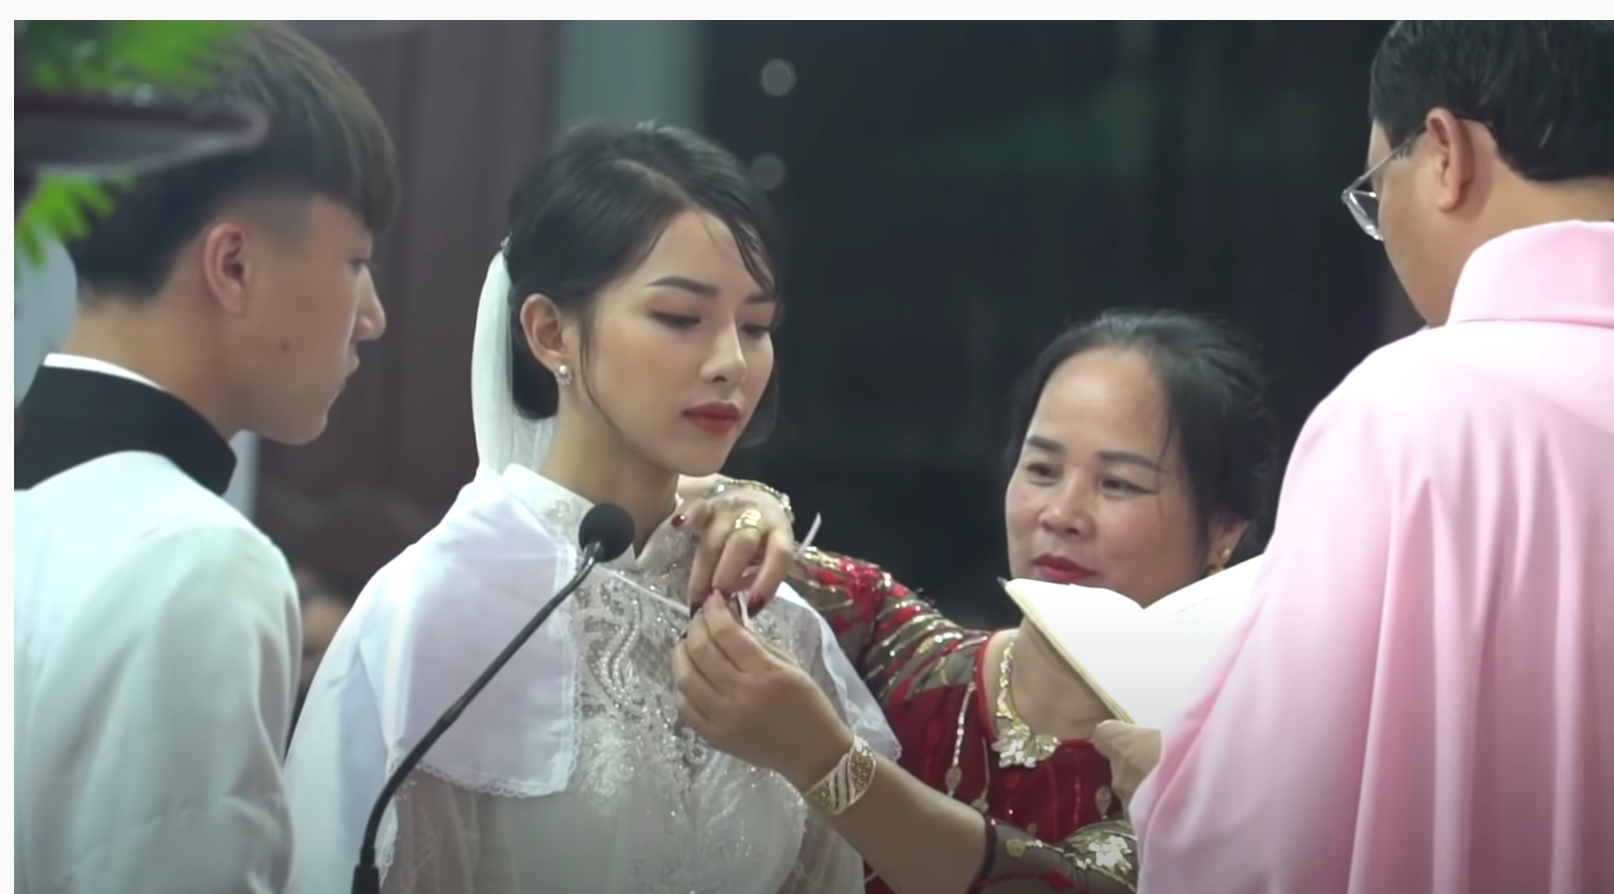 Phan Mạnh Quỳnh cưới hotgirl: Cô dâu diễm lệ, chú rể hát Vợ người ta  - 2